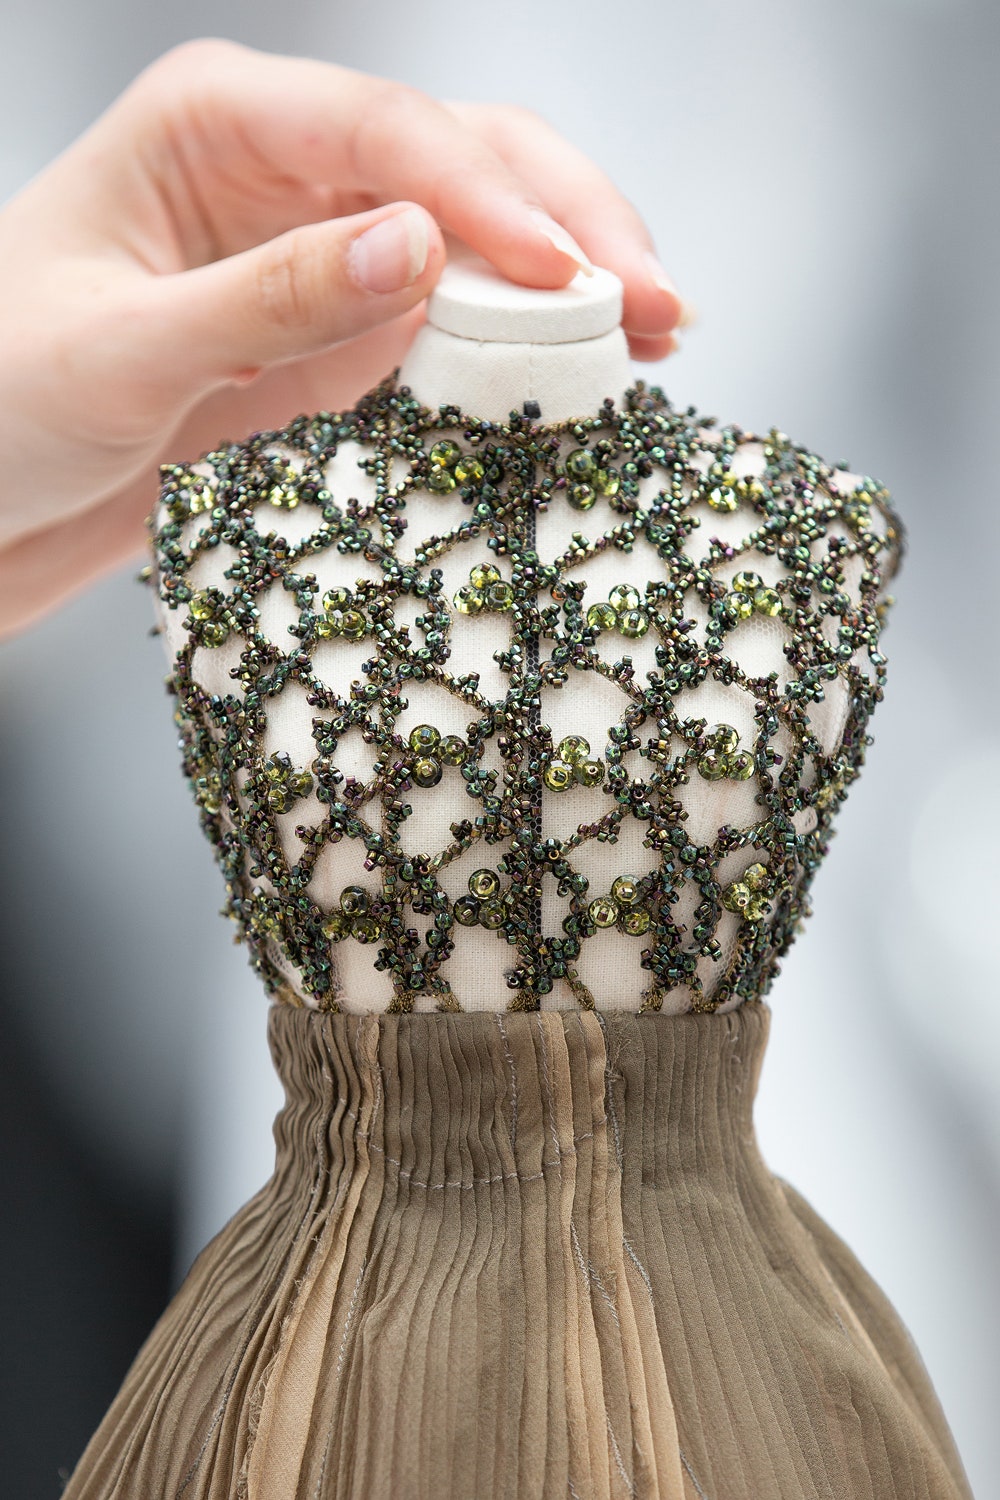 Миниатюрная версия платья Meraud из кутюрной коллекции Christian Dior